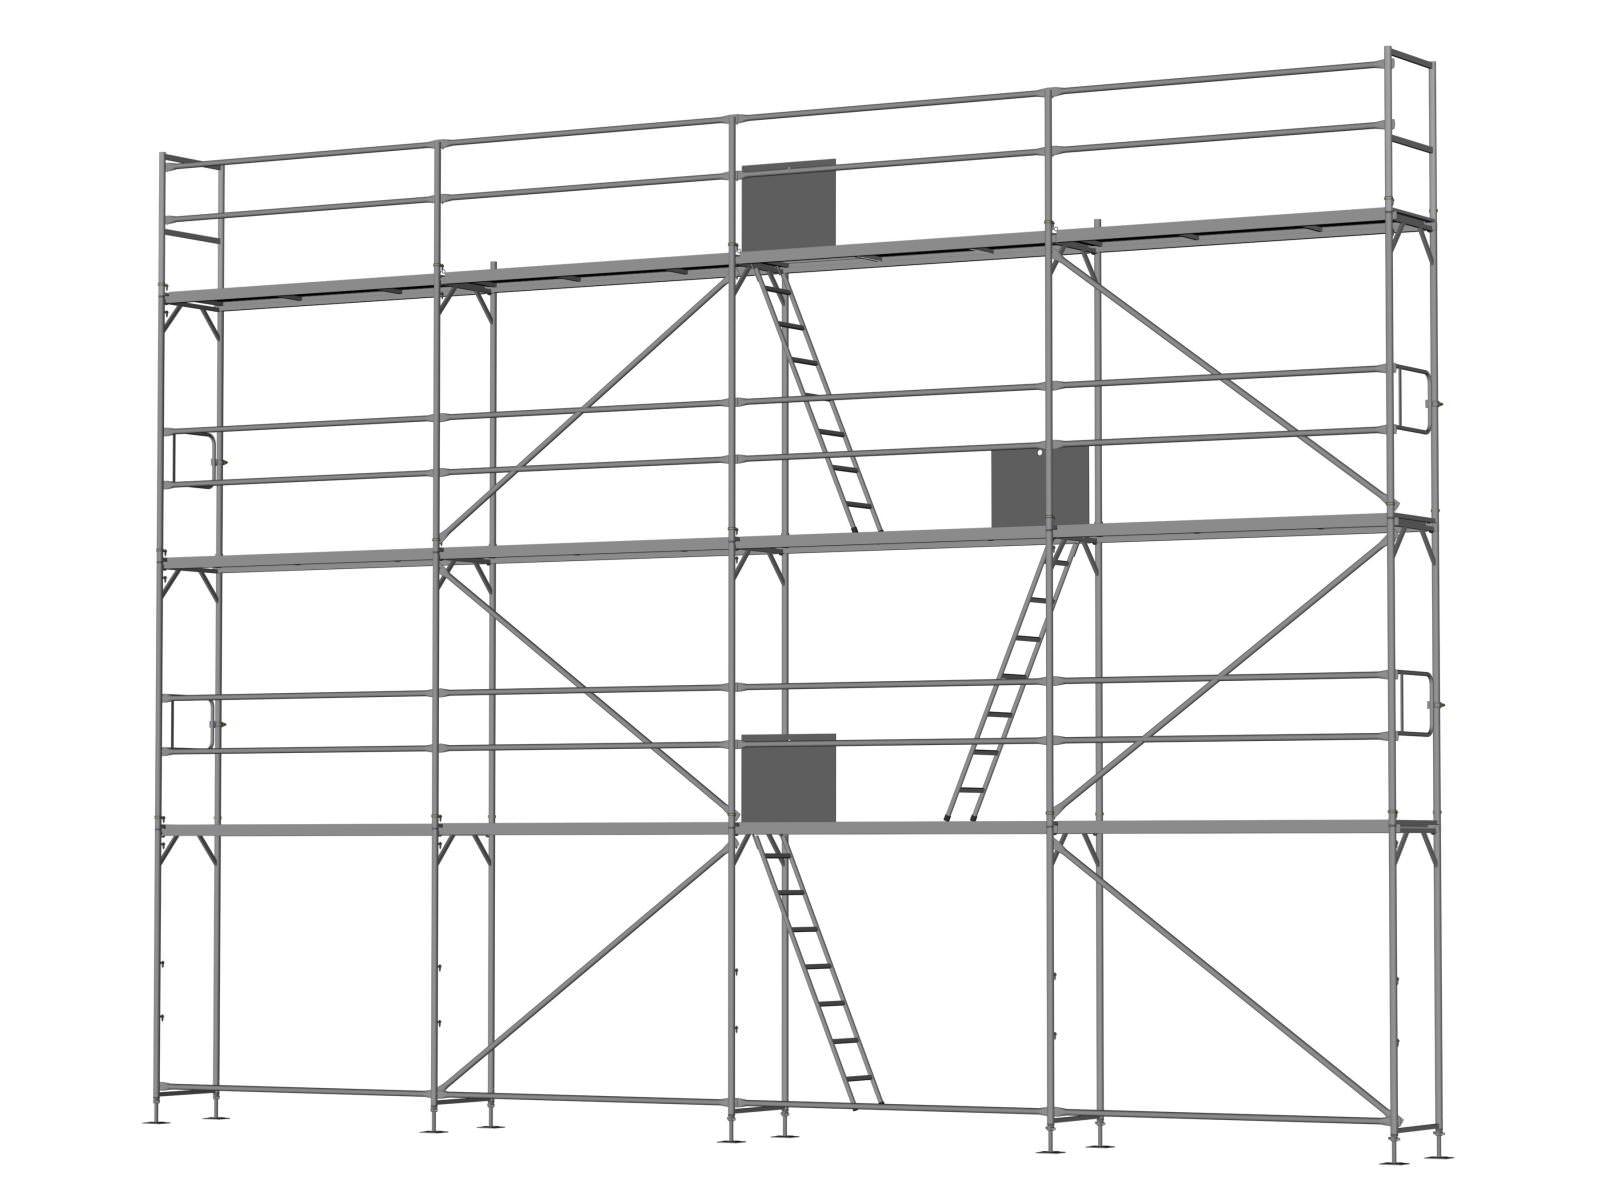 Alu Traufseitengerüst 80 qm - 2,5 m Felder - 10 m lang - 8 m Arbeitshöhe - Basis-Gerüst inkl. Aufstieg & Befestigung